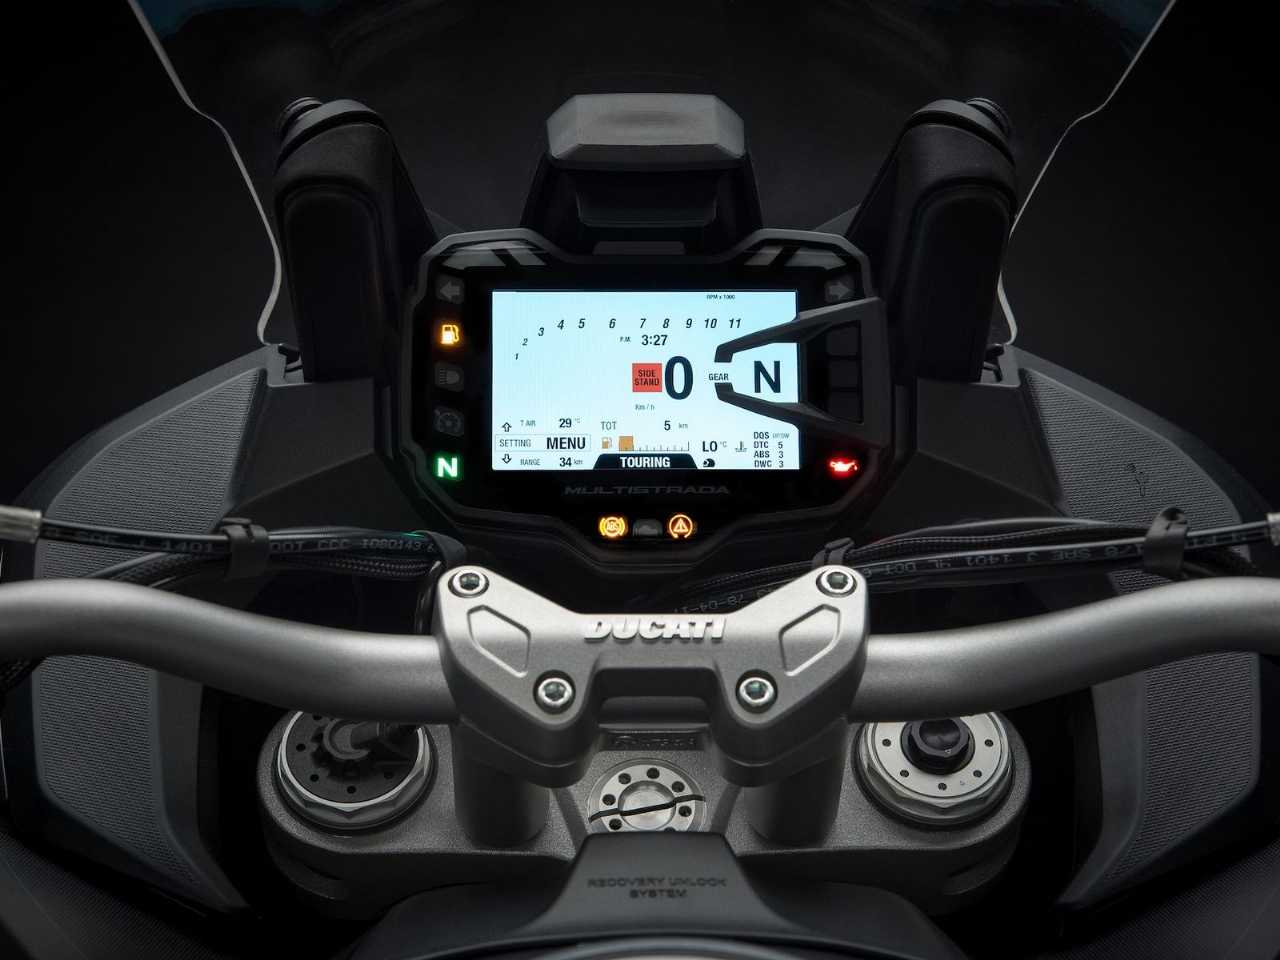 DucatiMultistrada 1260 2019 - lateral